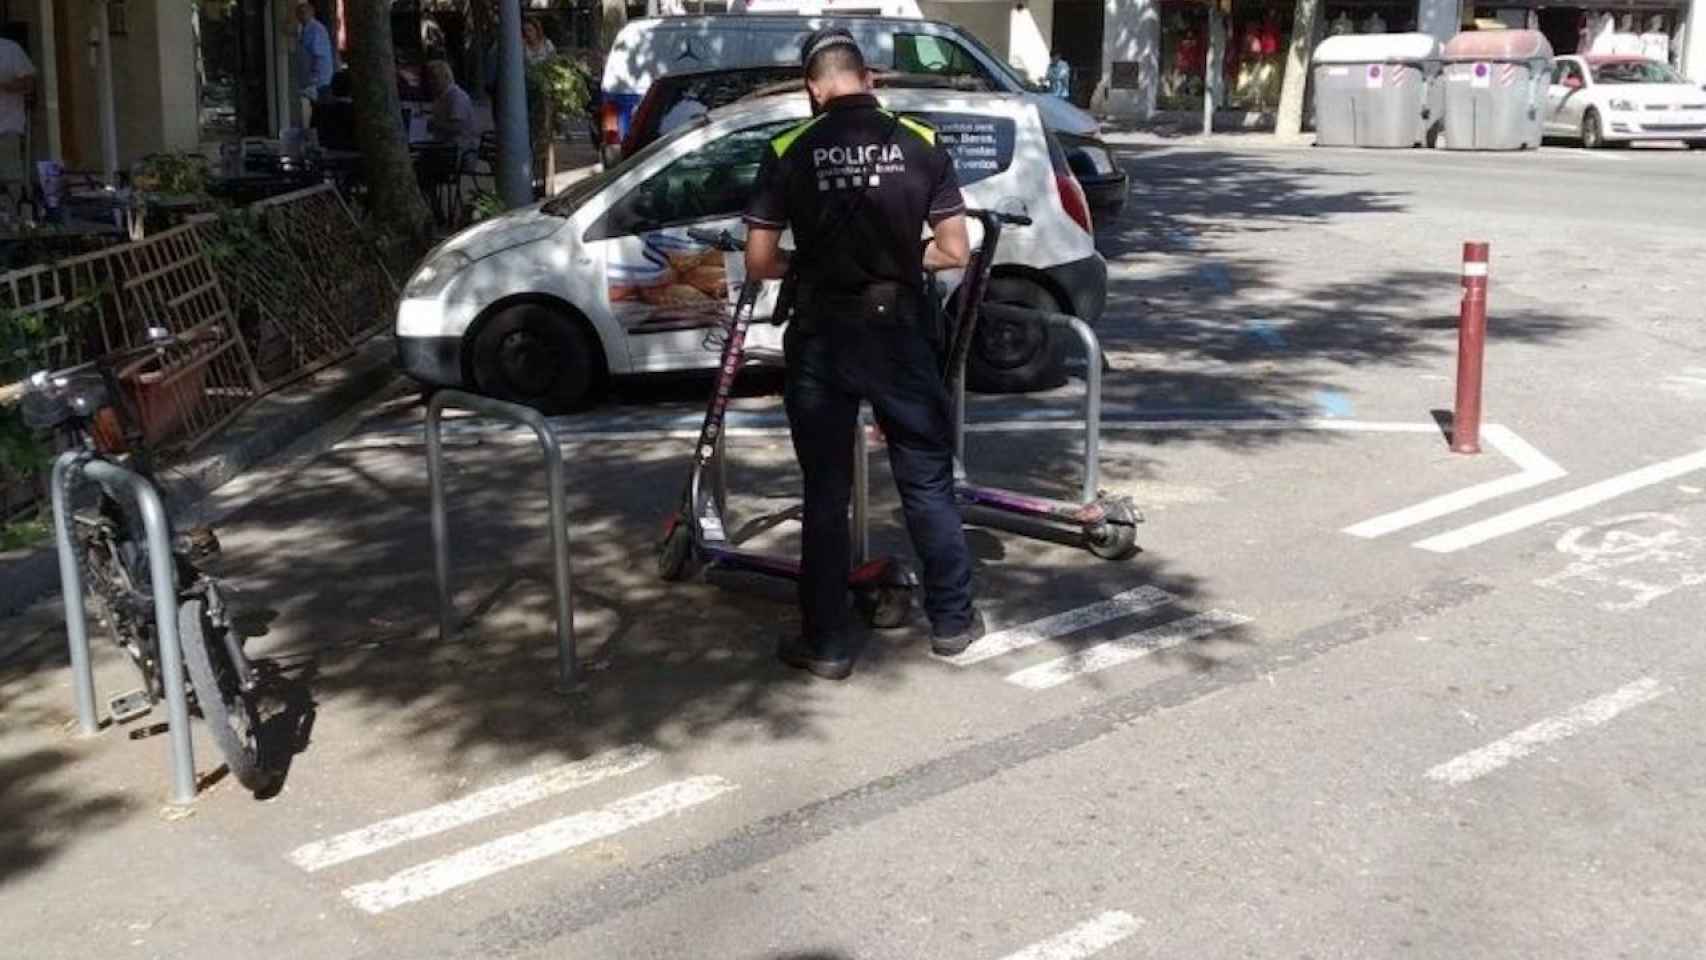 Un guardia urbano multa un patinete mal estacionado en Barcelona / JORDI SUBIRANA